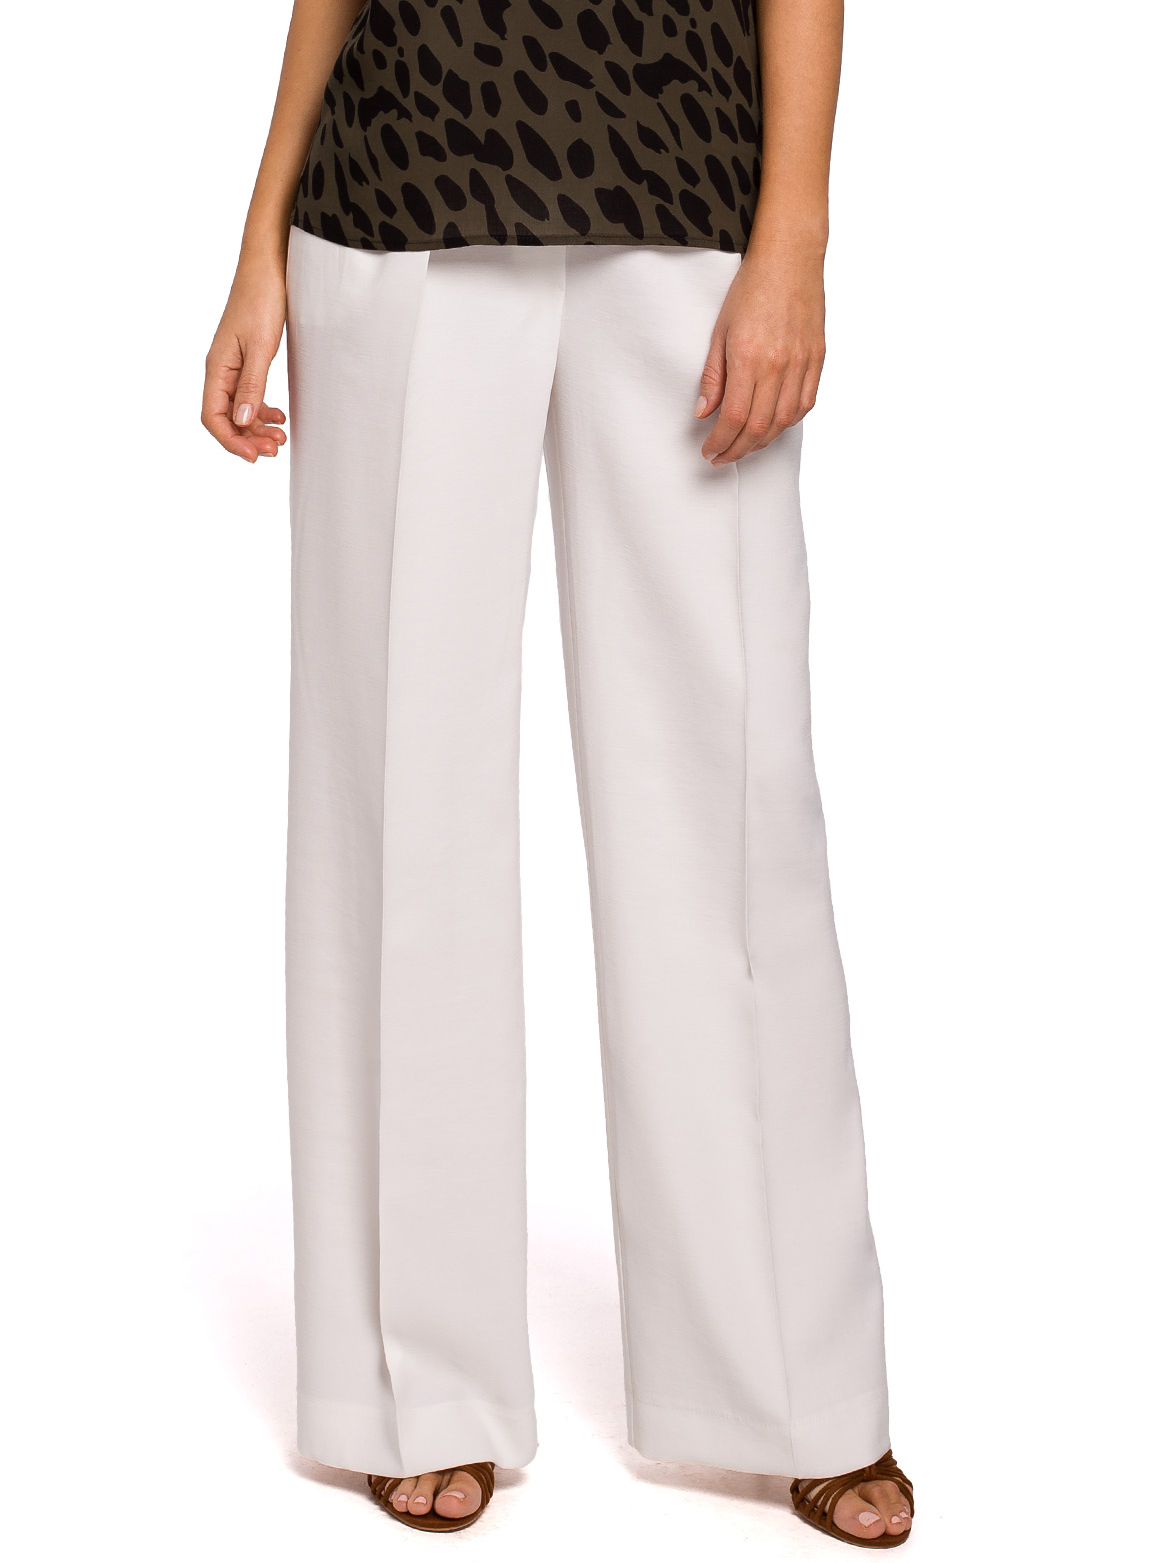 Style leveälahkeiset housut valkoinen S203